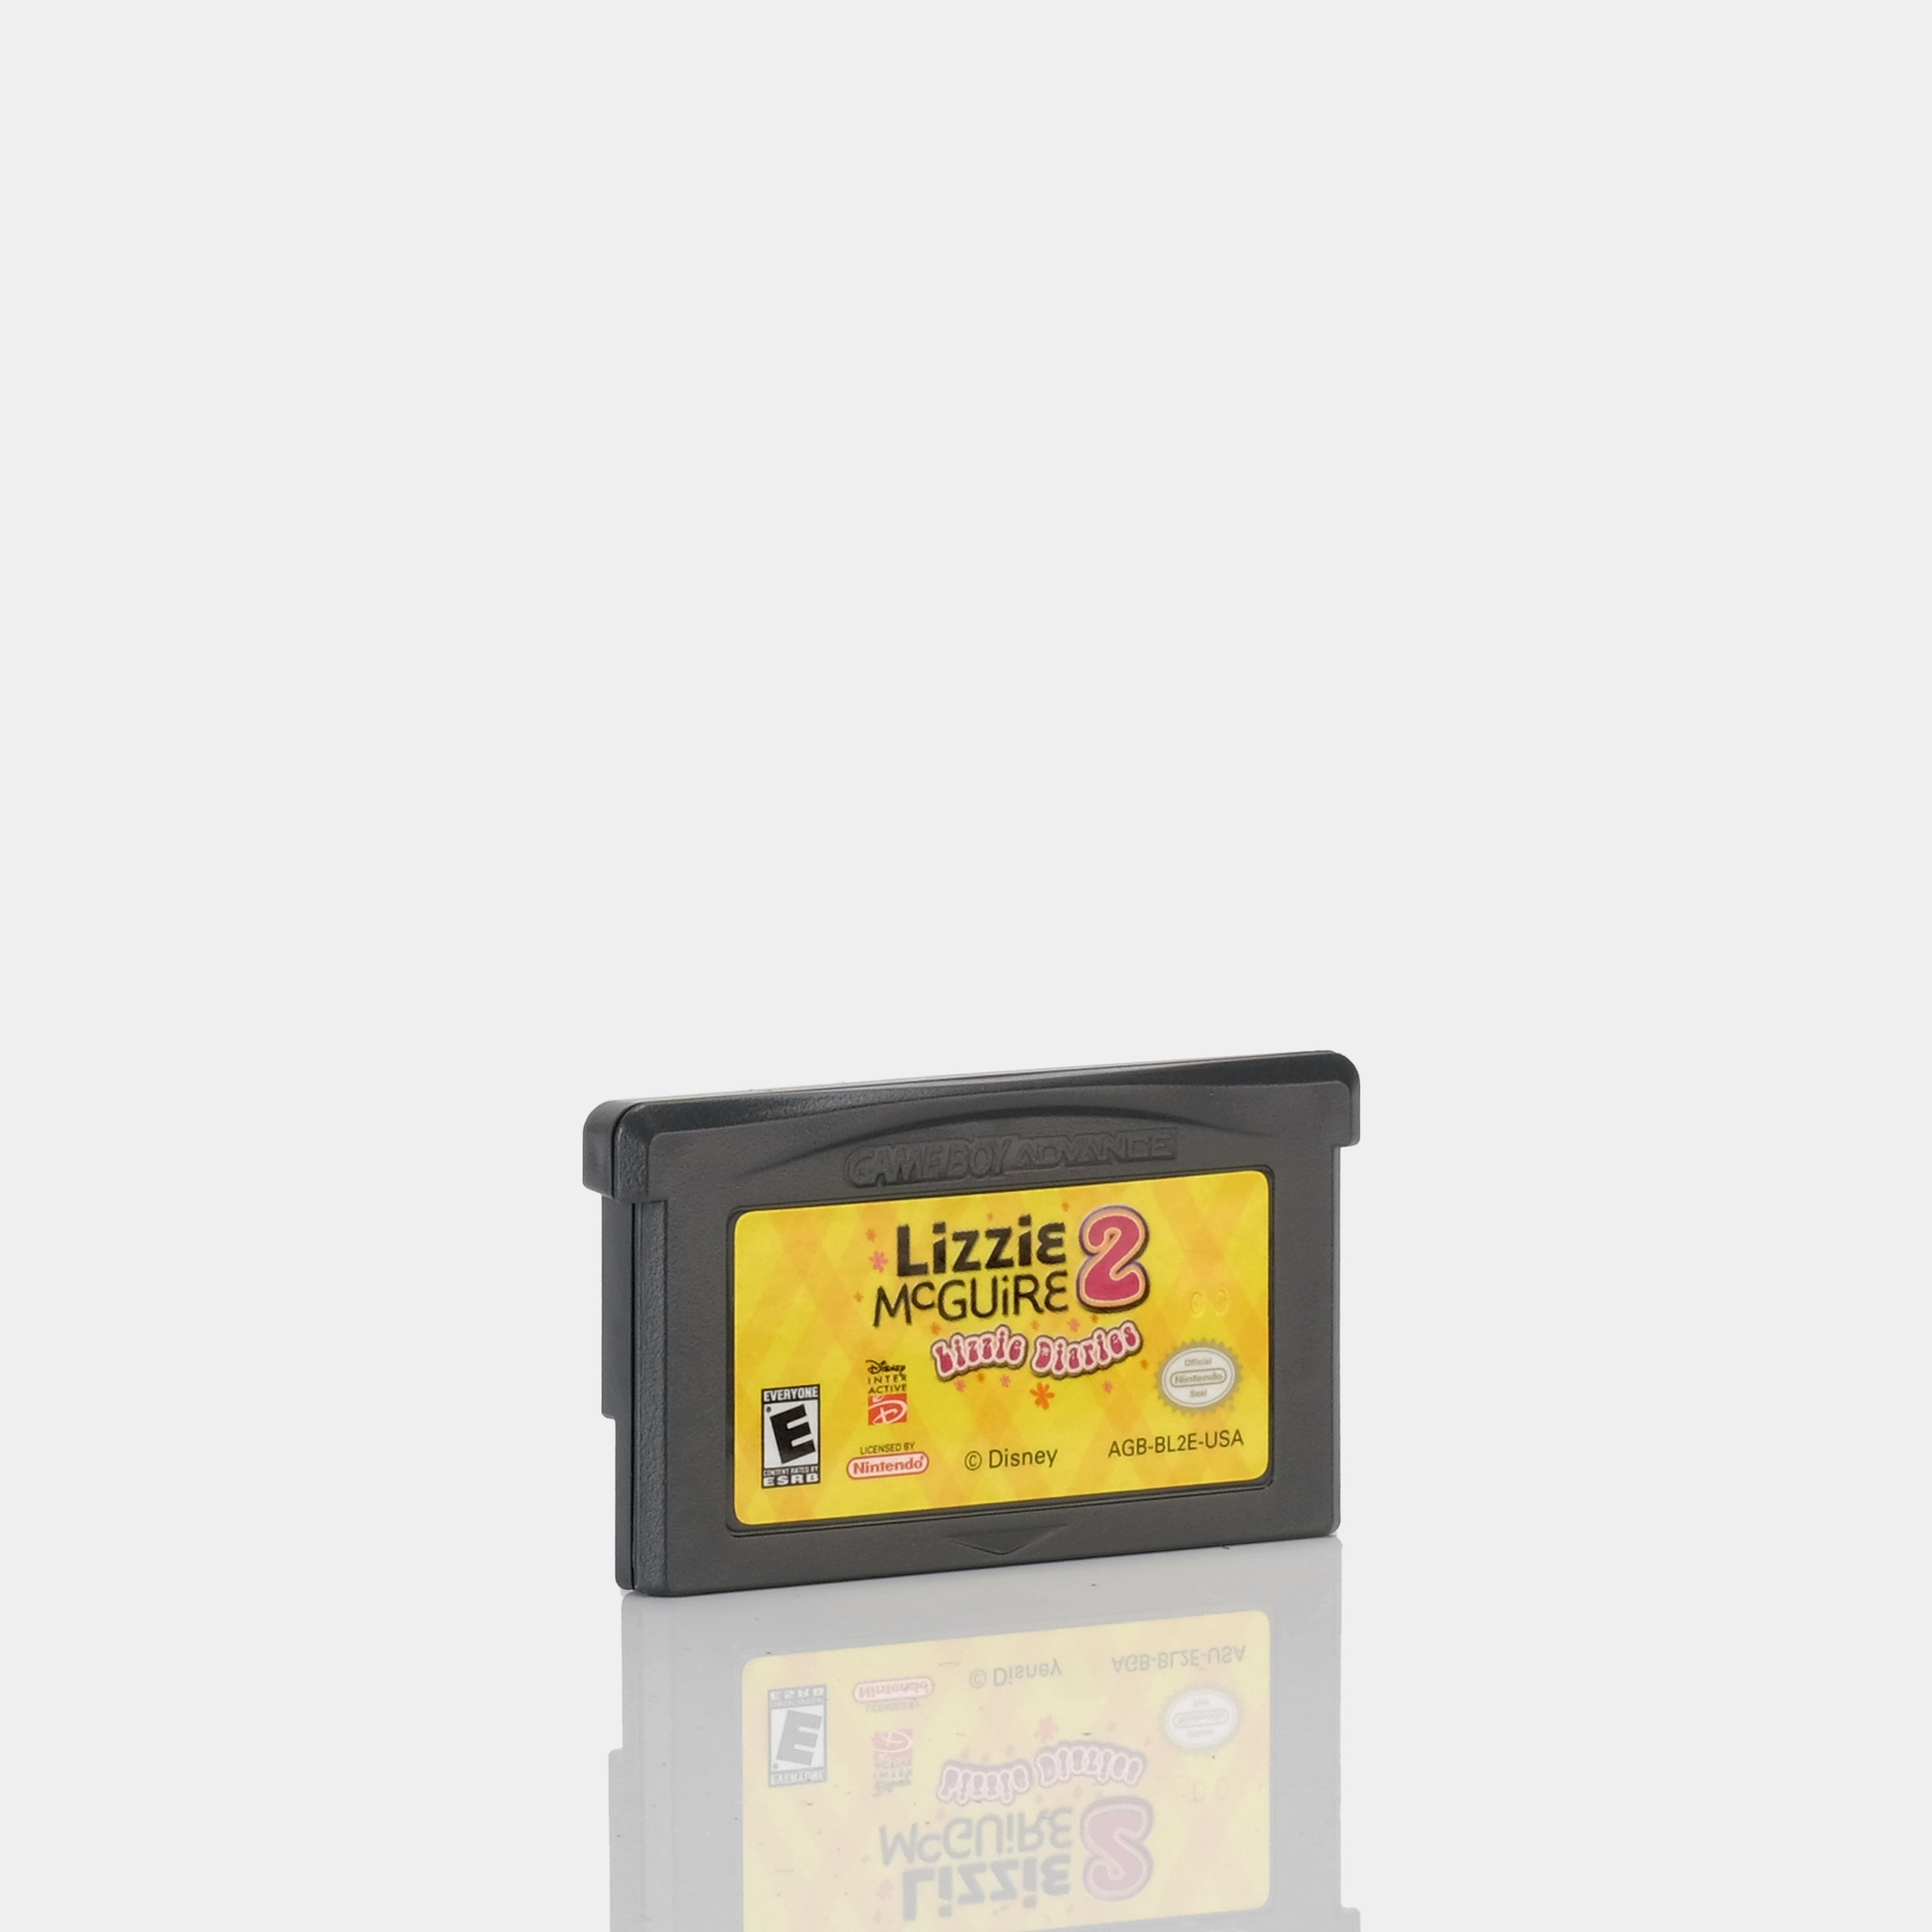 Lizzie McGuire 2: Lizzie Diaries Game Boy Advance Game